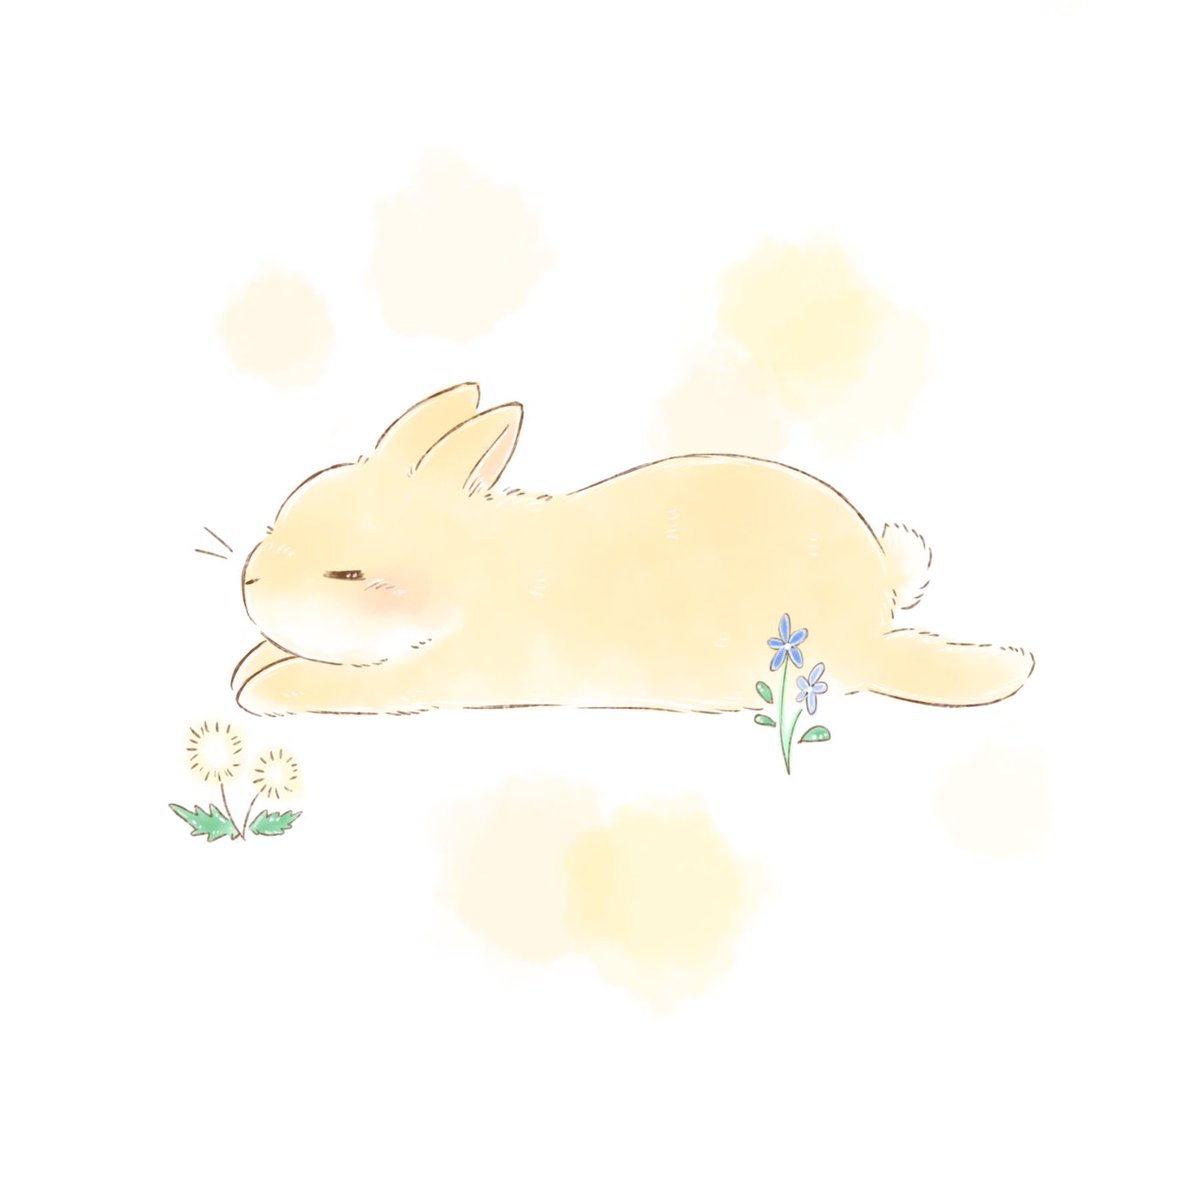 今週もゆる〜く がんばろう🌼*･

#うさぎ #rabbit #イラスト #illustration